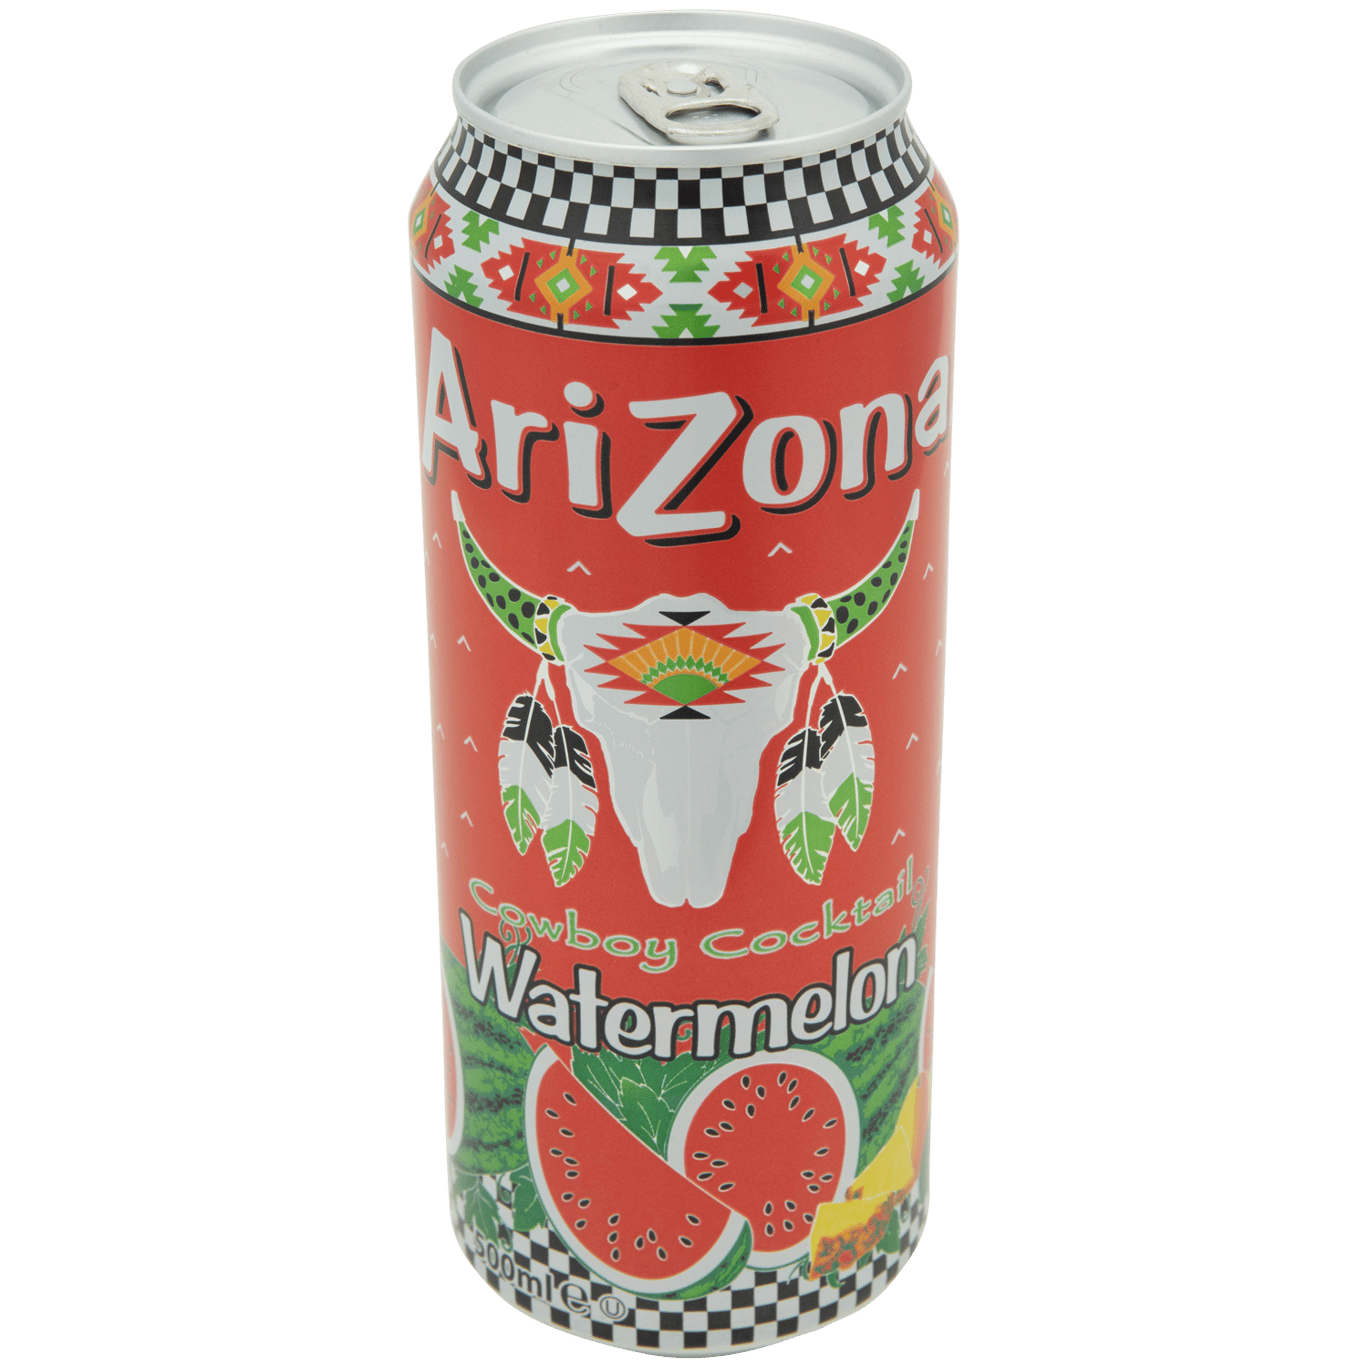 Arizona Arizona Watermelon